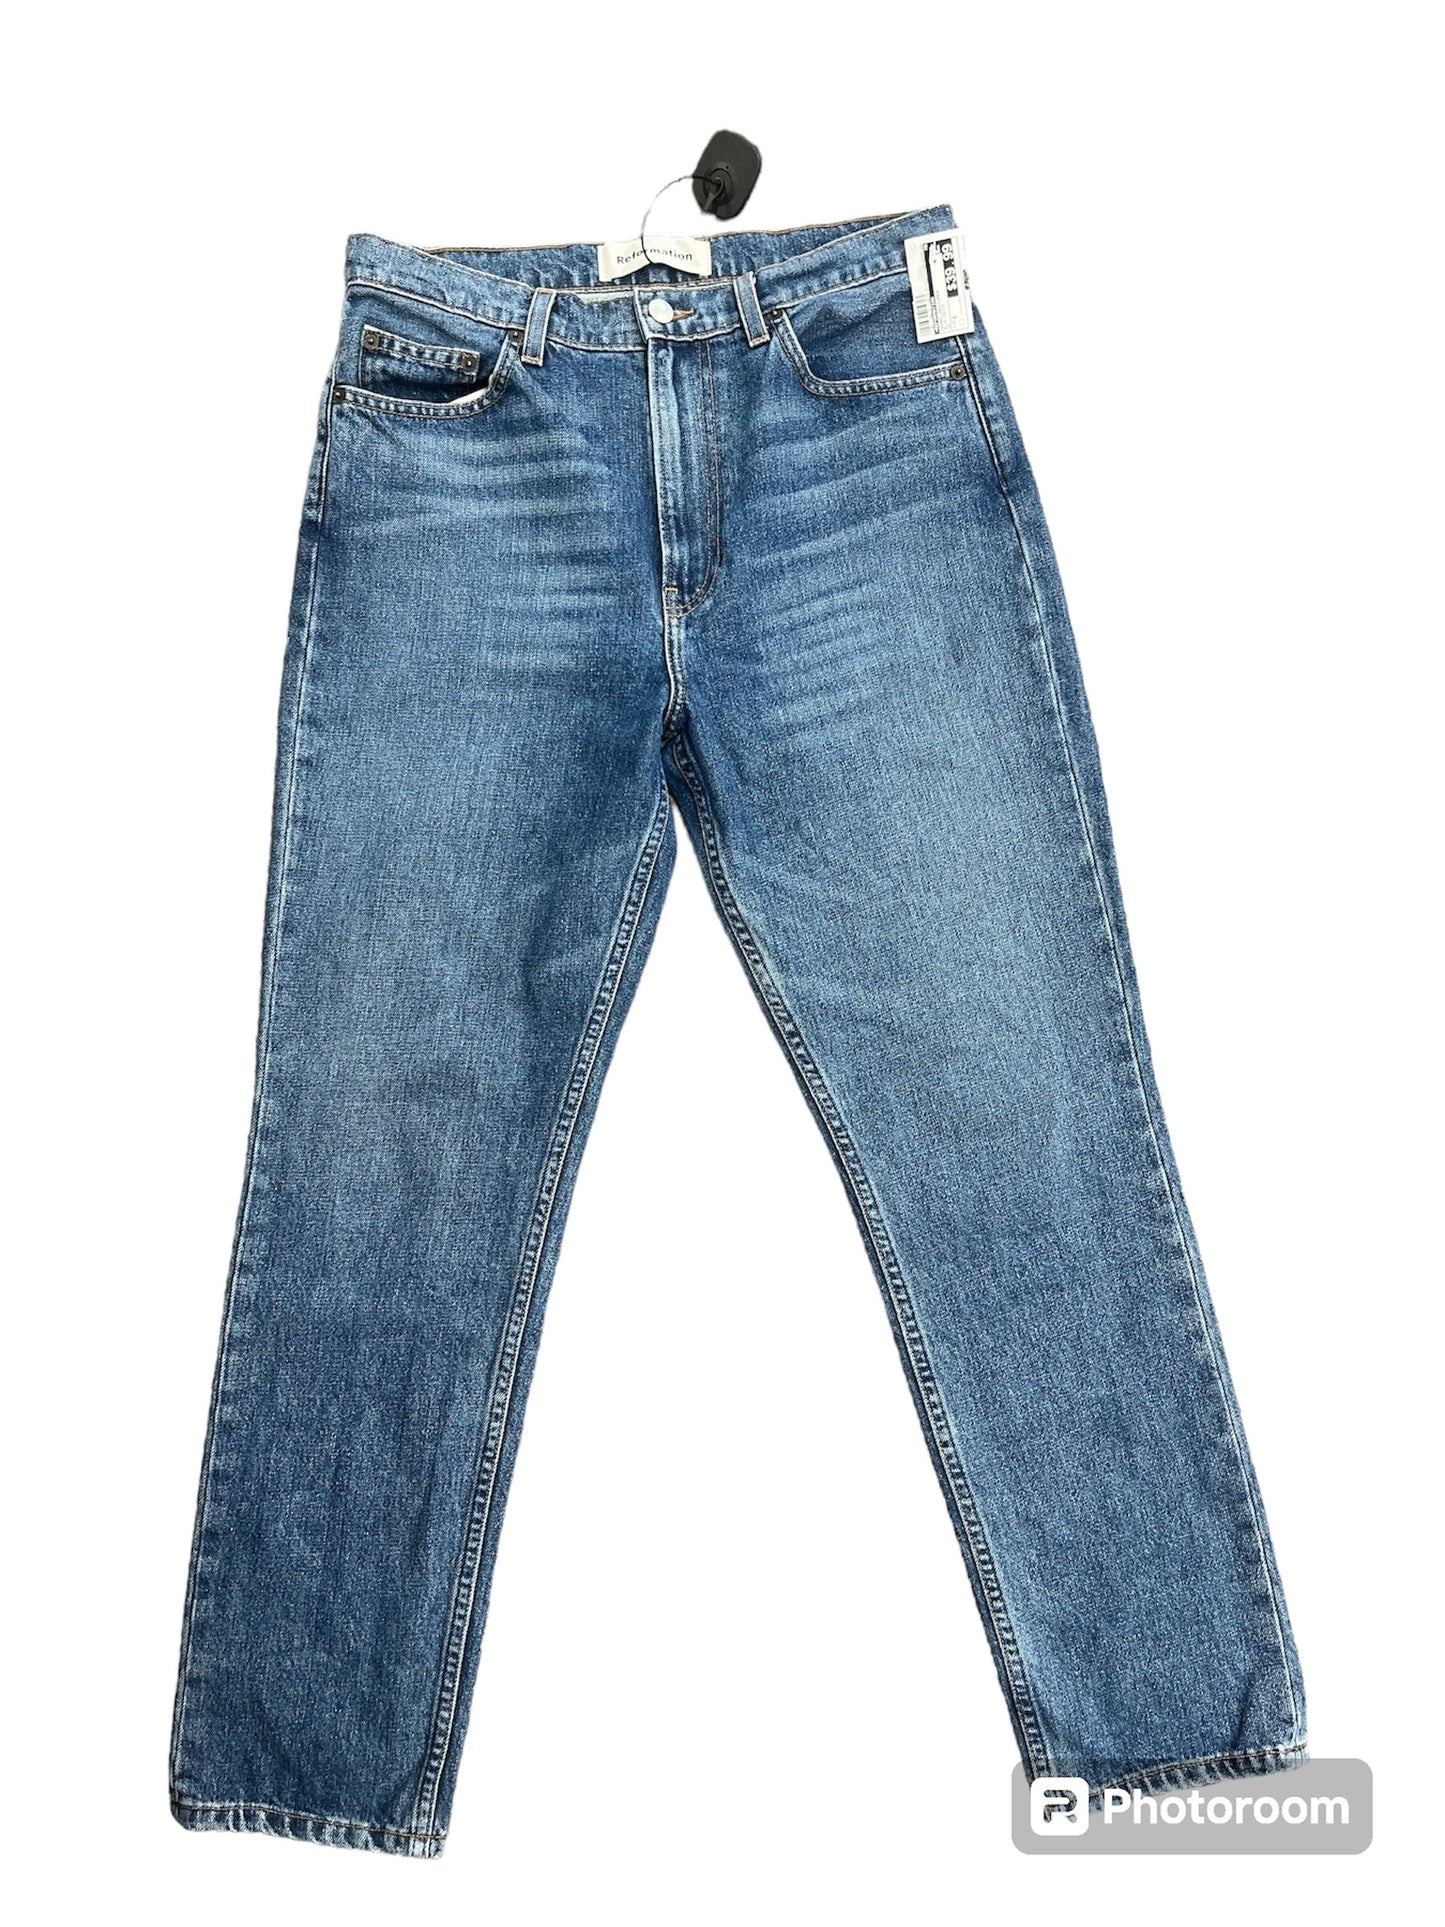 Blue Denim Jeans Designer Reformation, Size 8